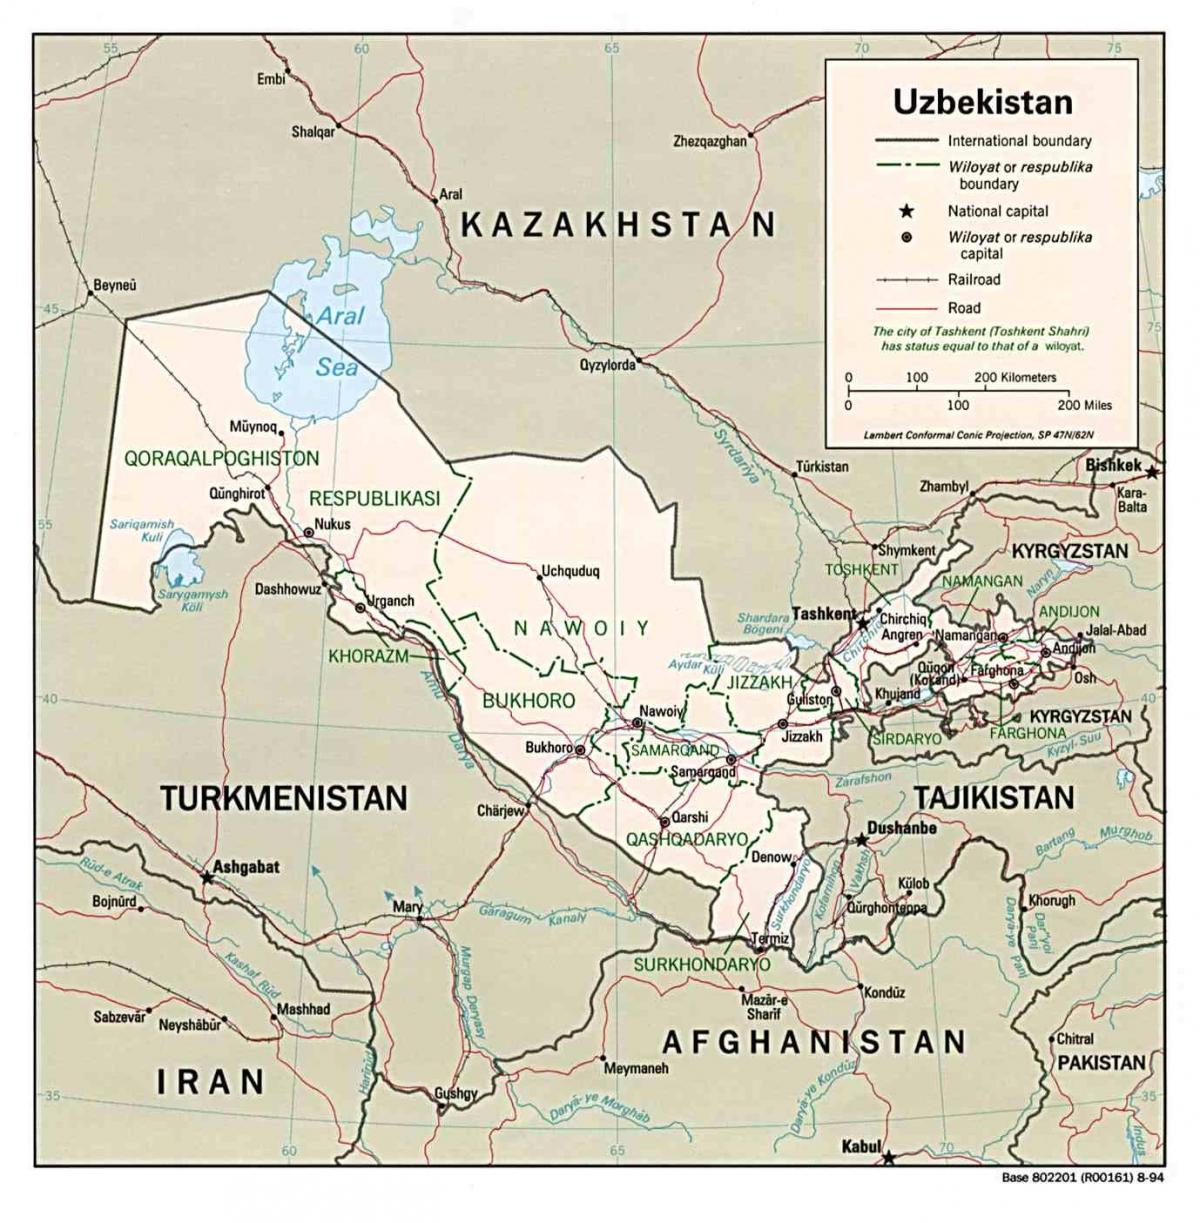 नक्शा उजबेकिस्तान आसपास के देशों